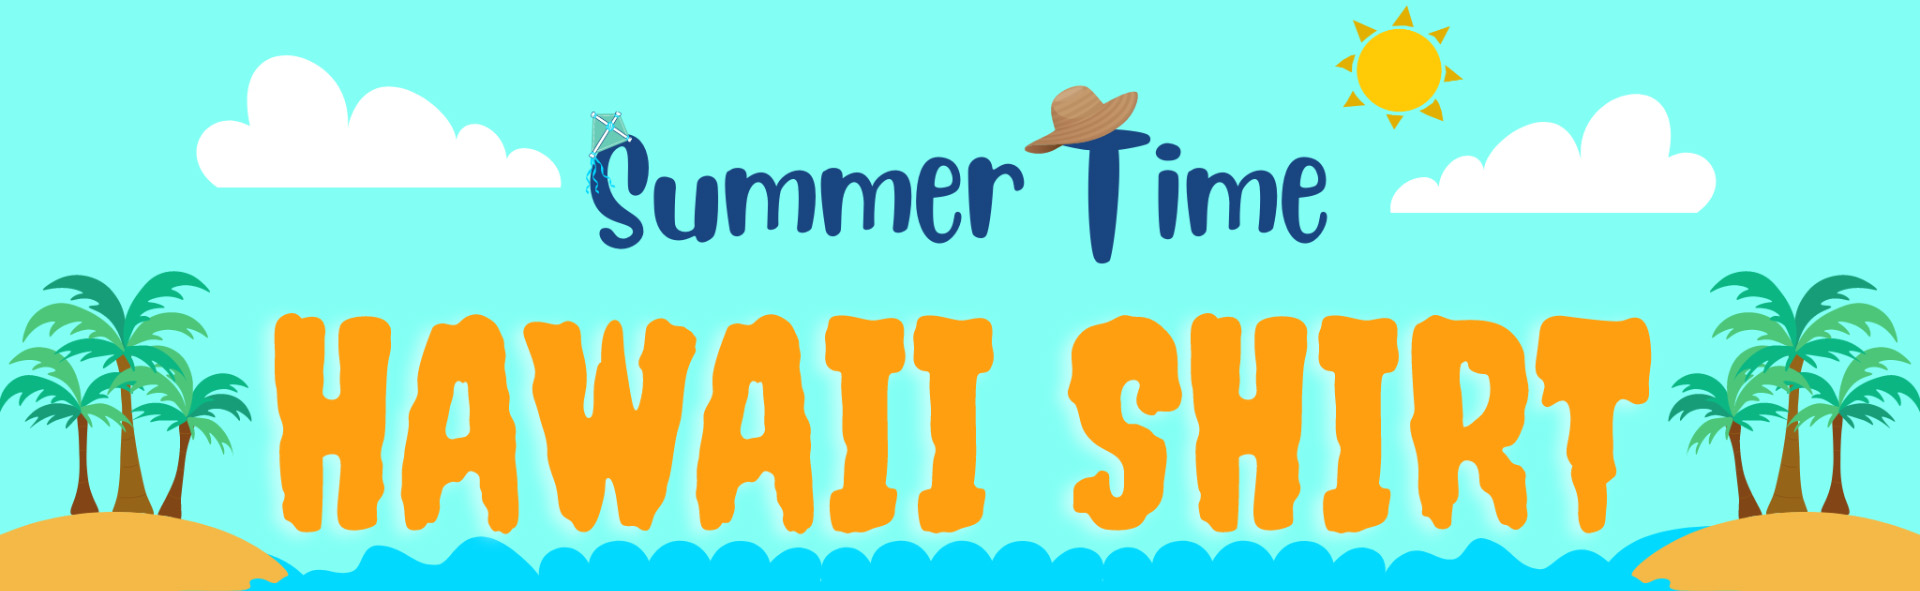 summer hawaiian poster